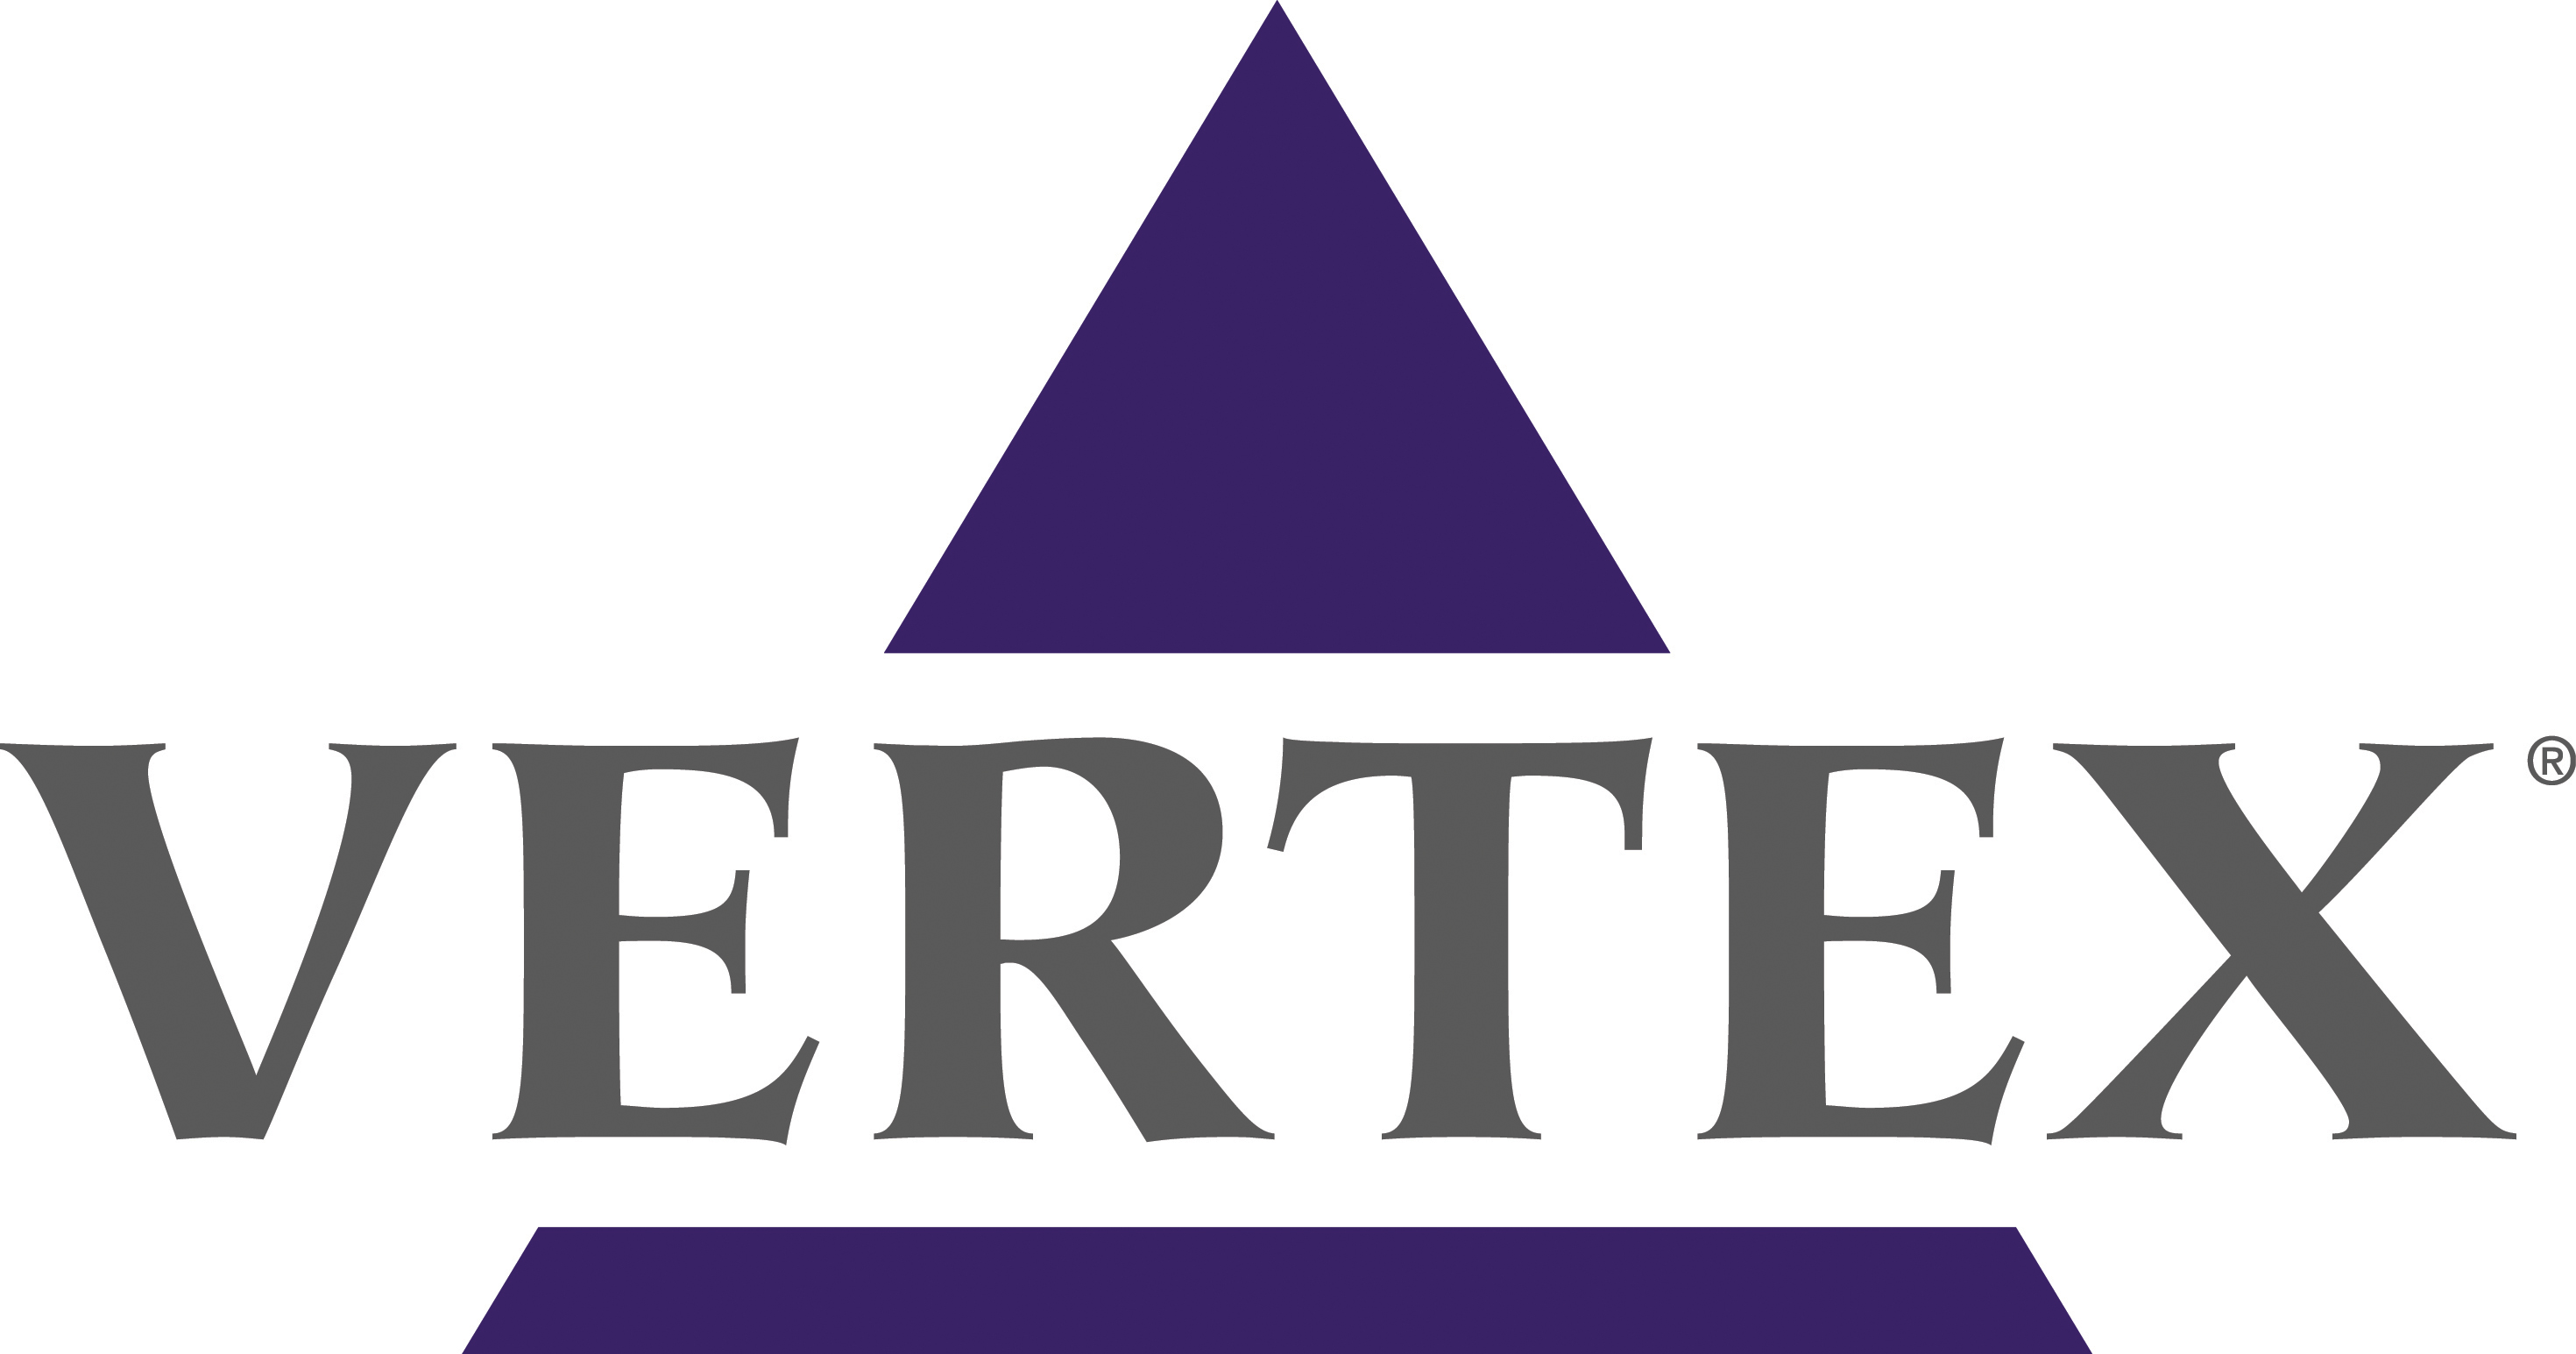 Vertex Pharmaceuticals logo